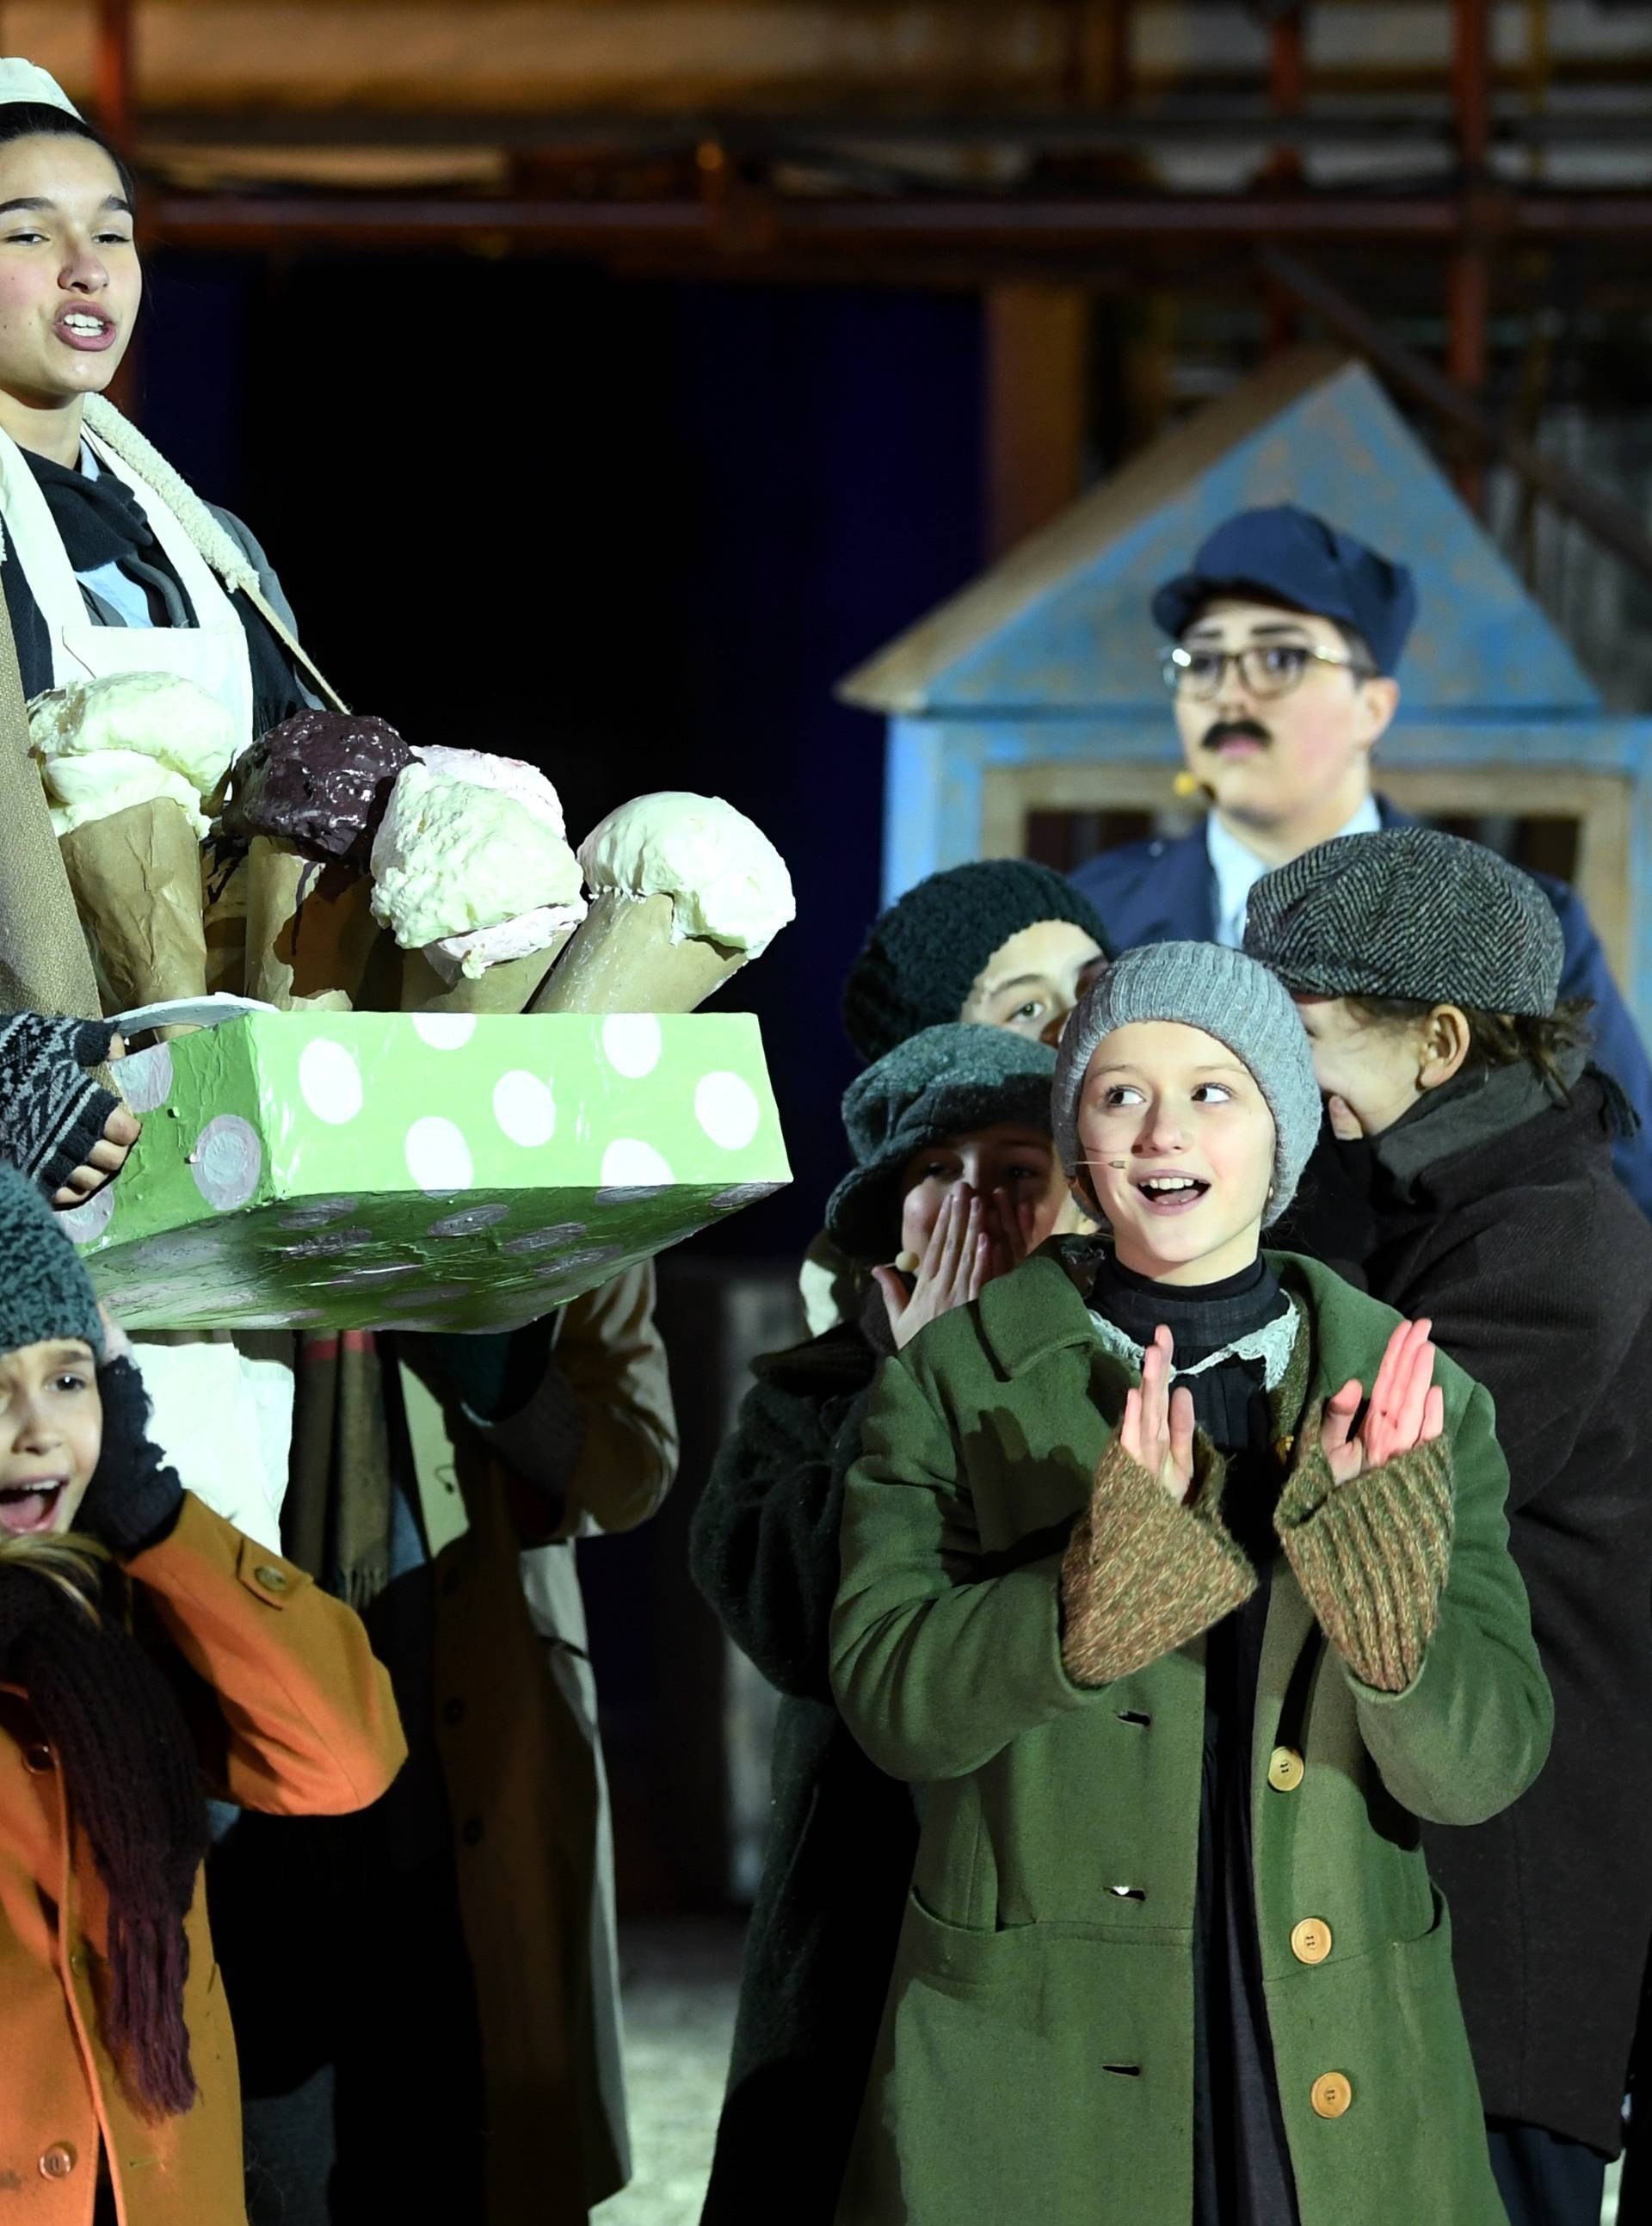 Vrlo emotivno: Opera djece iz Auschwitza rasplakala publiku